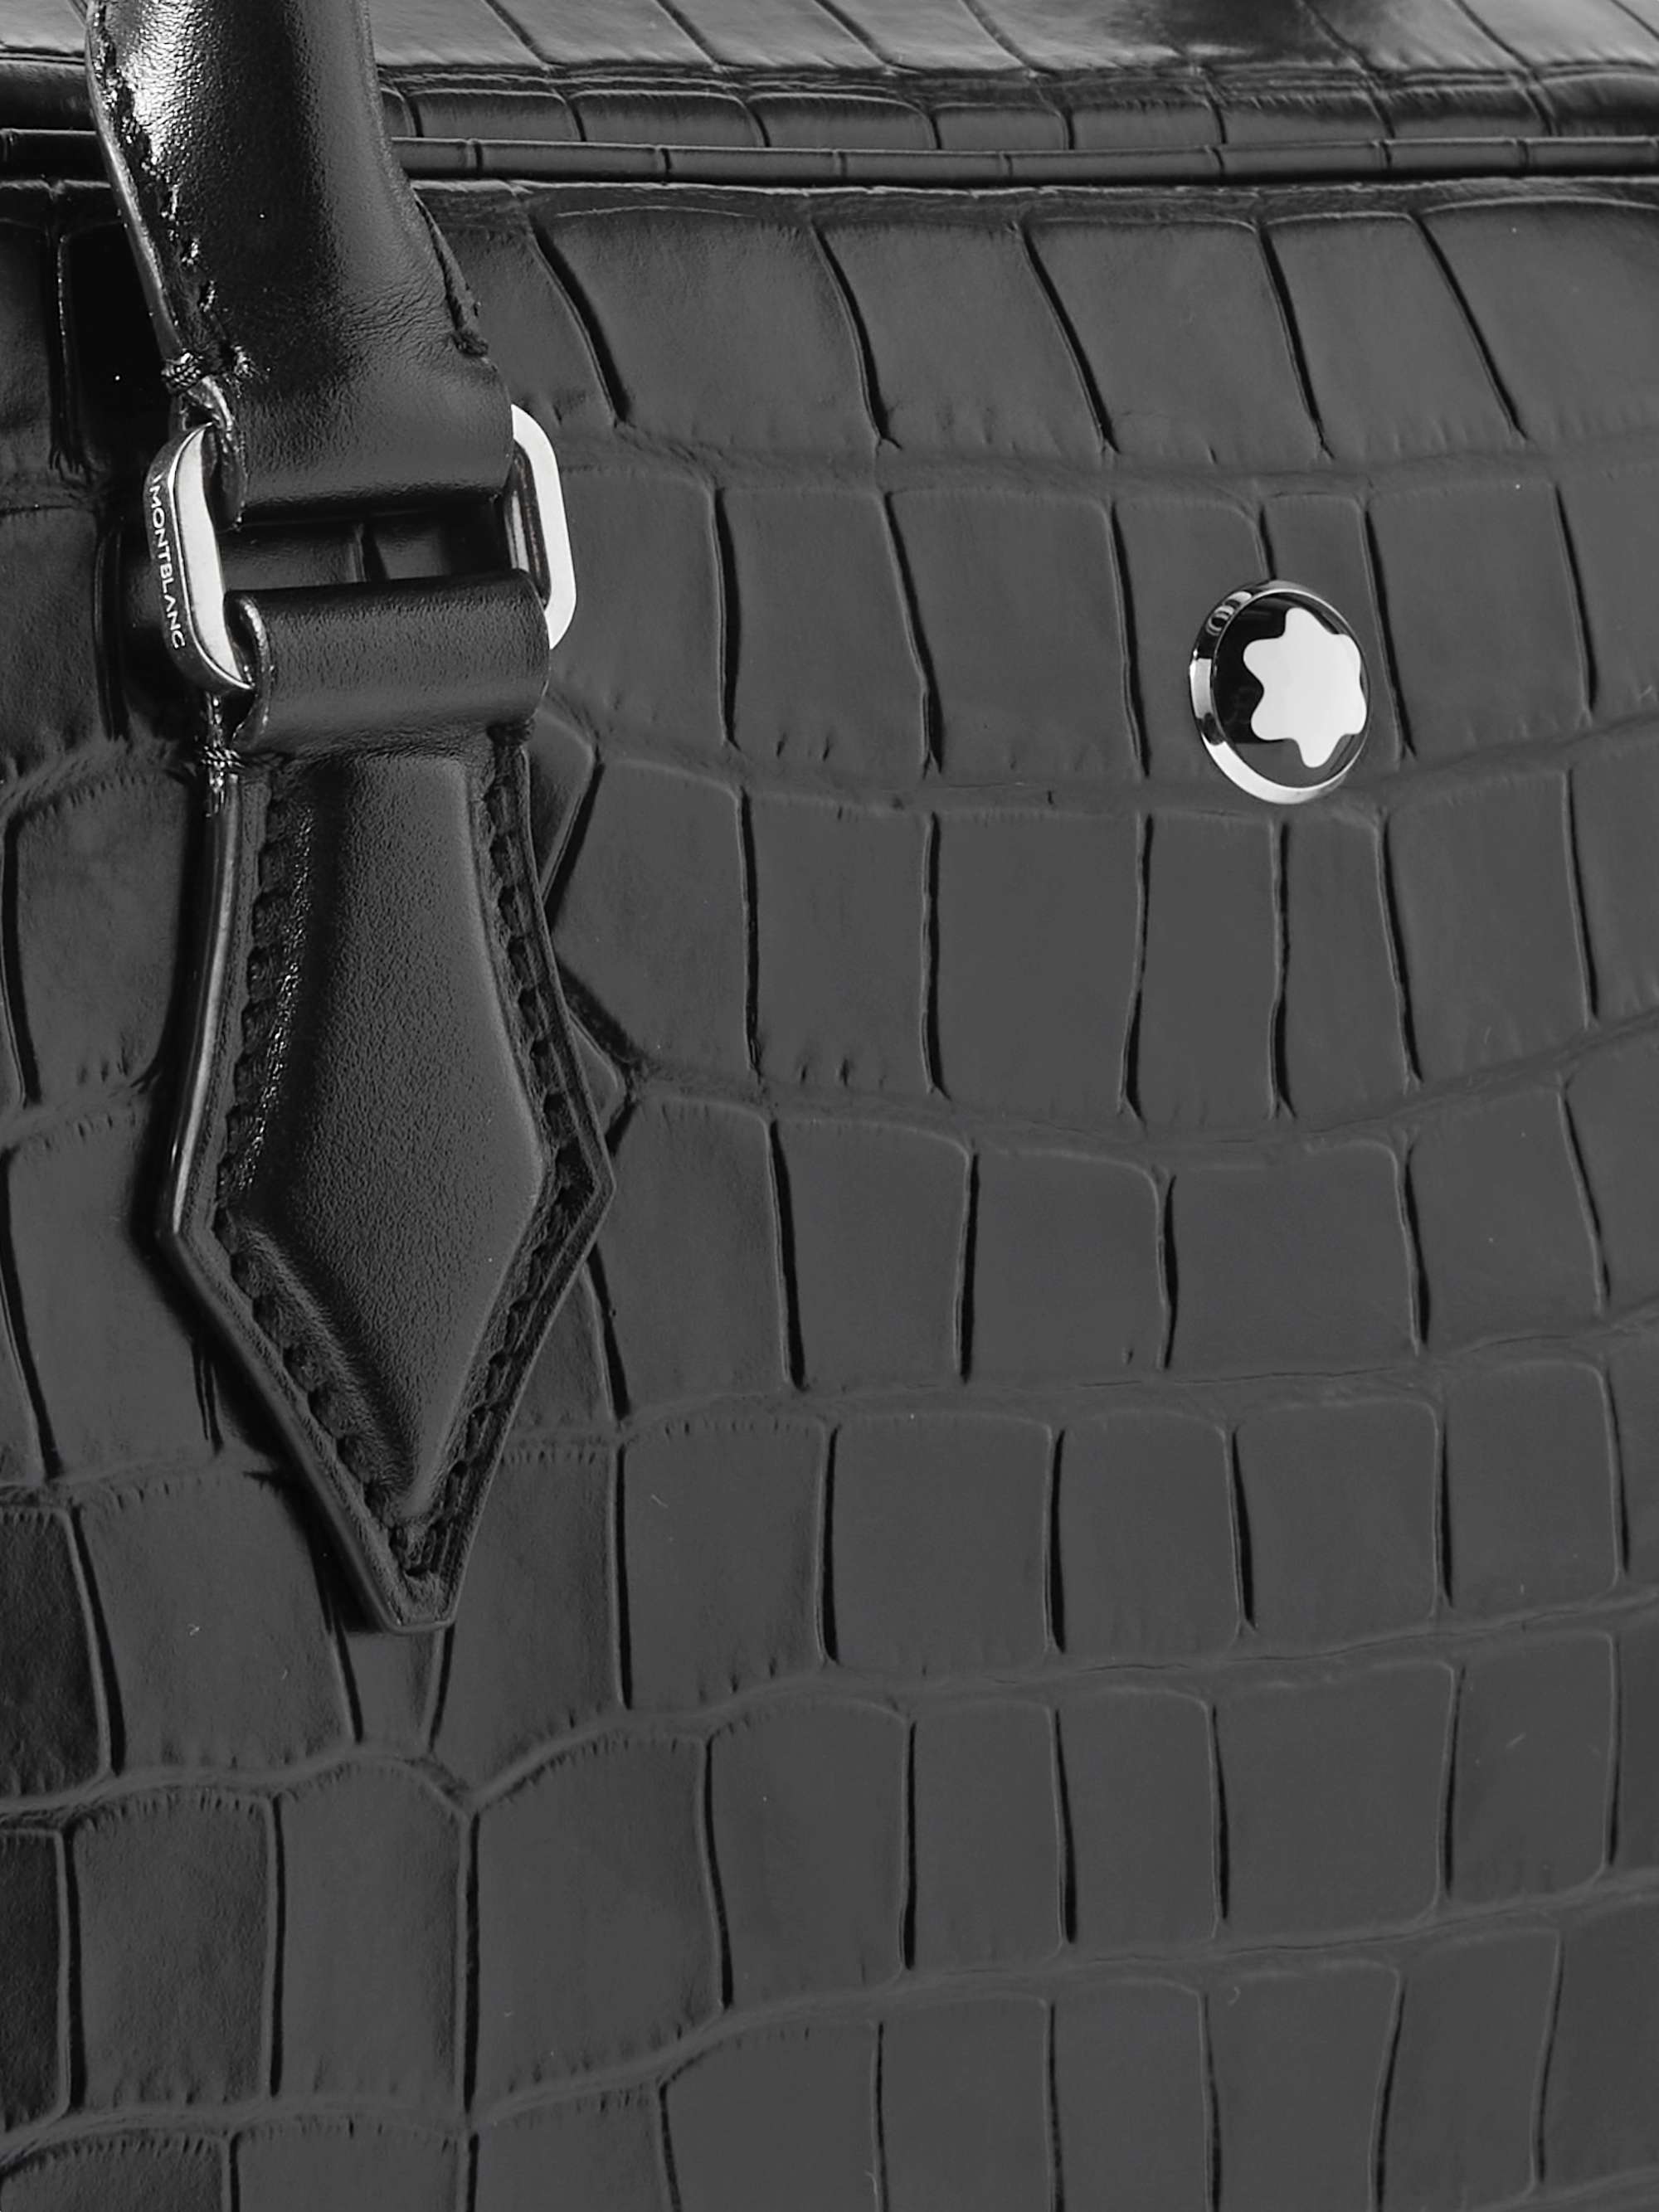 MONTBLANC Meisterstück Croc-Effect Leather Briefcase